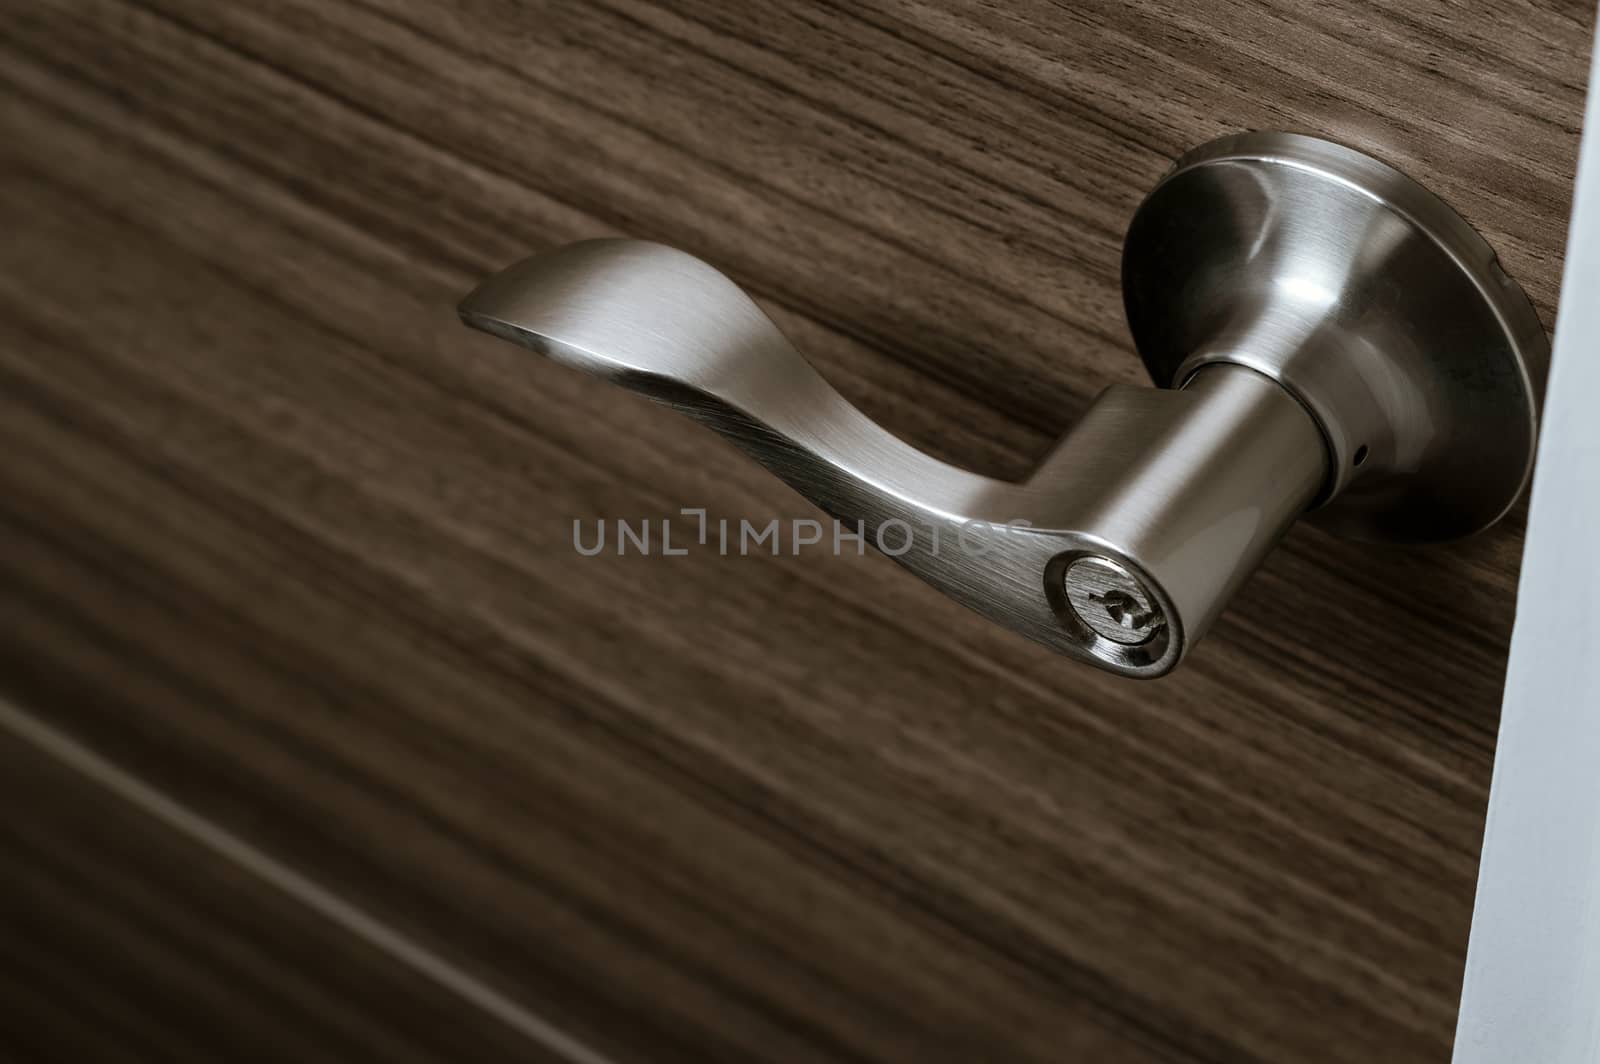 stainless steel door knob or handle with keyhole on wooden door by happycreator